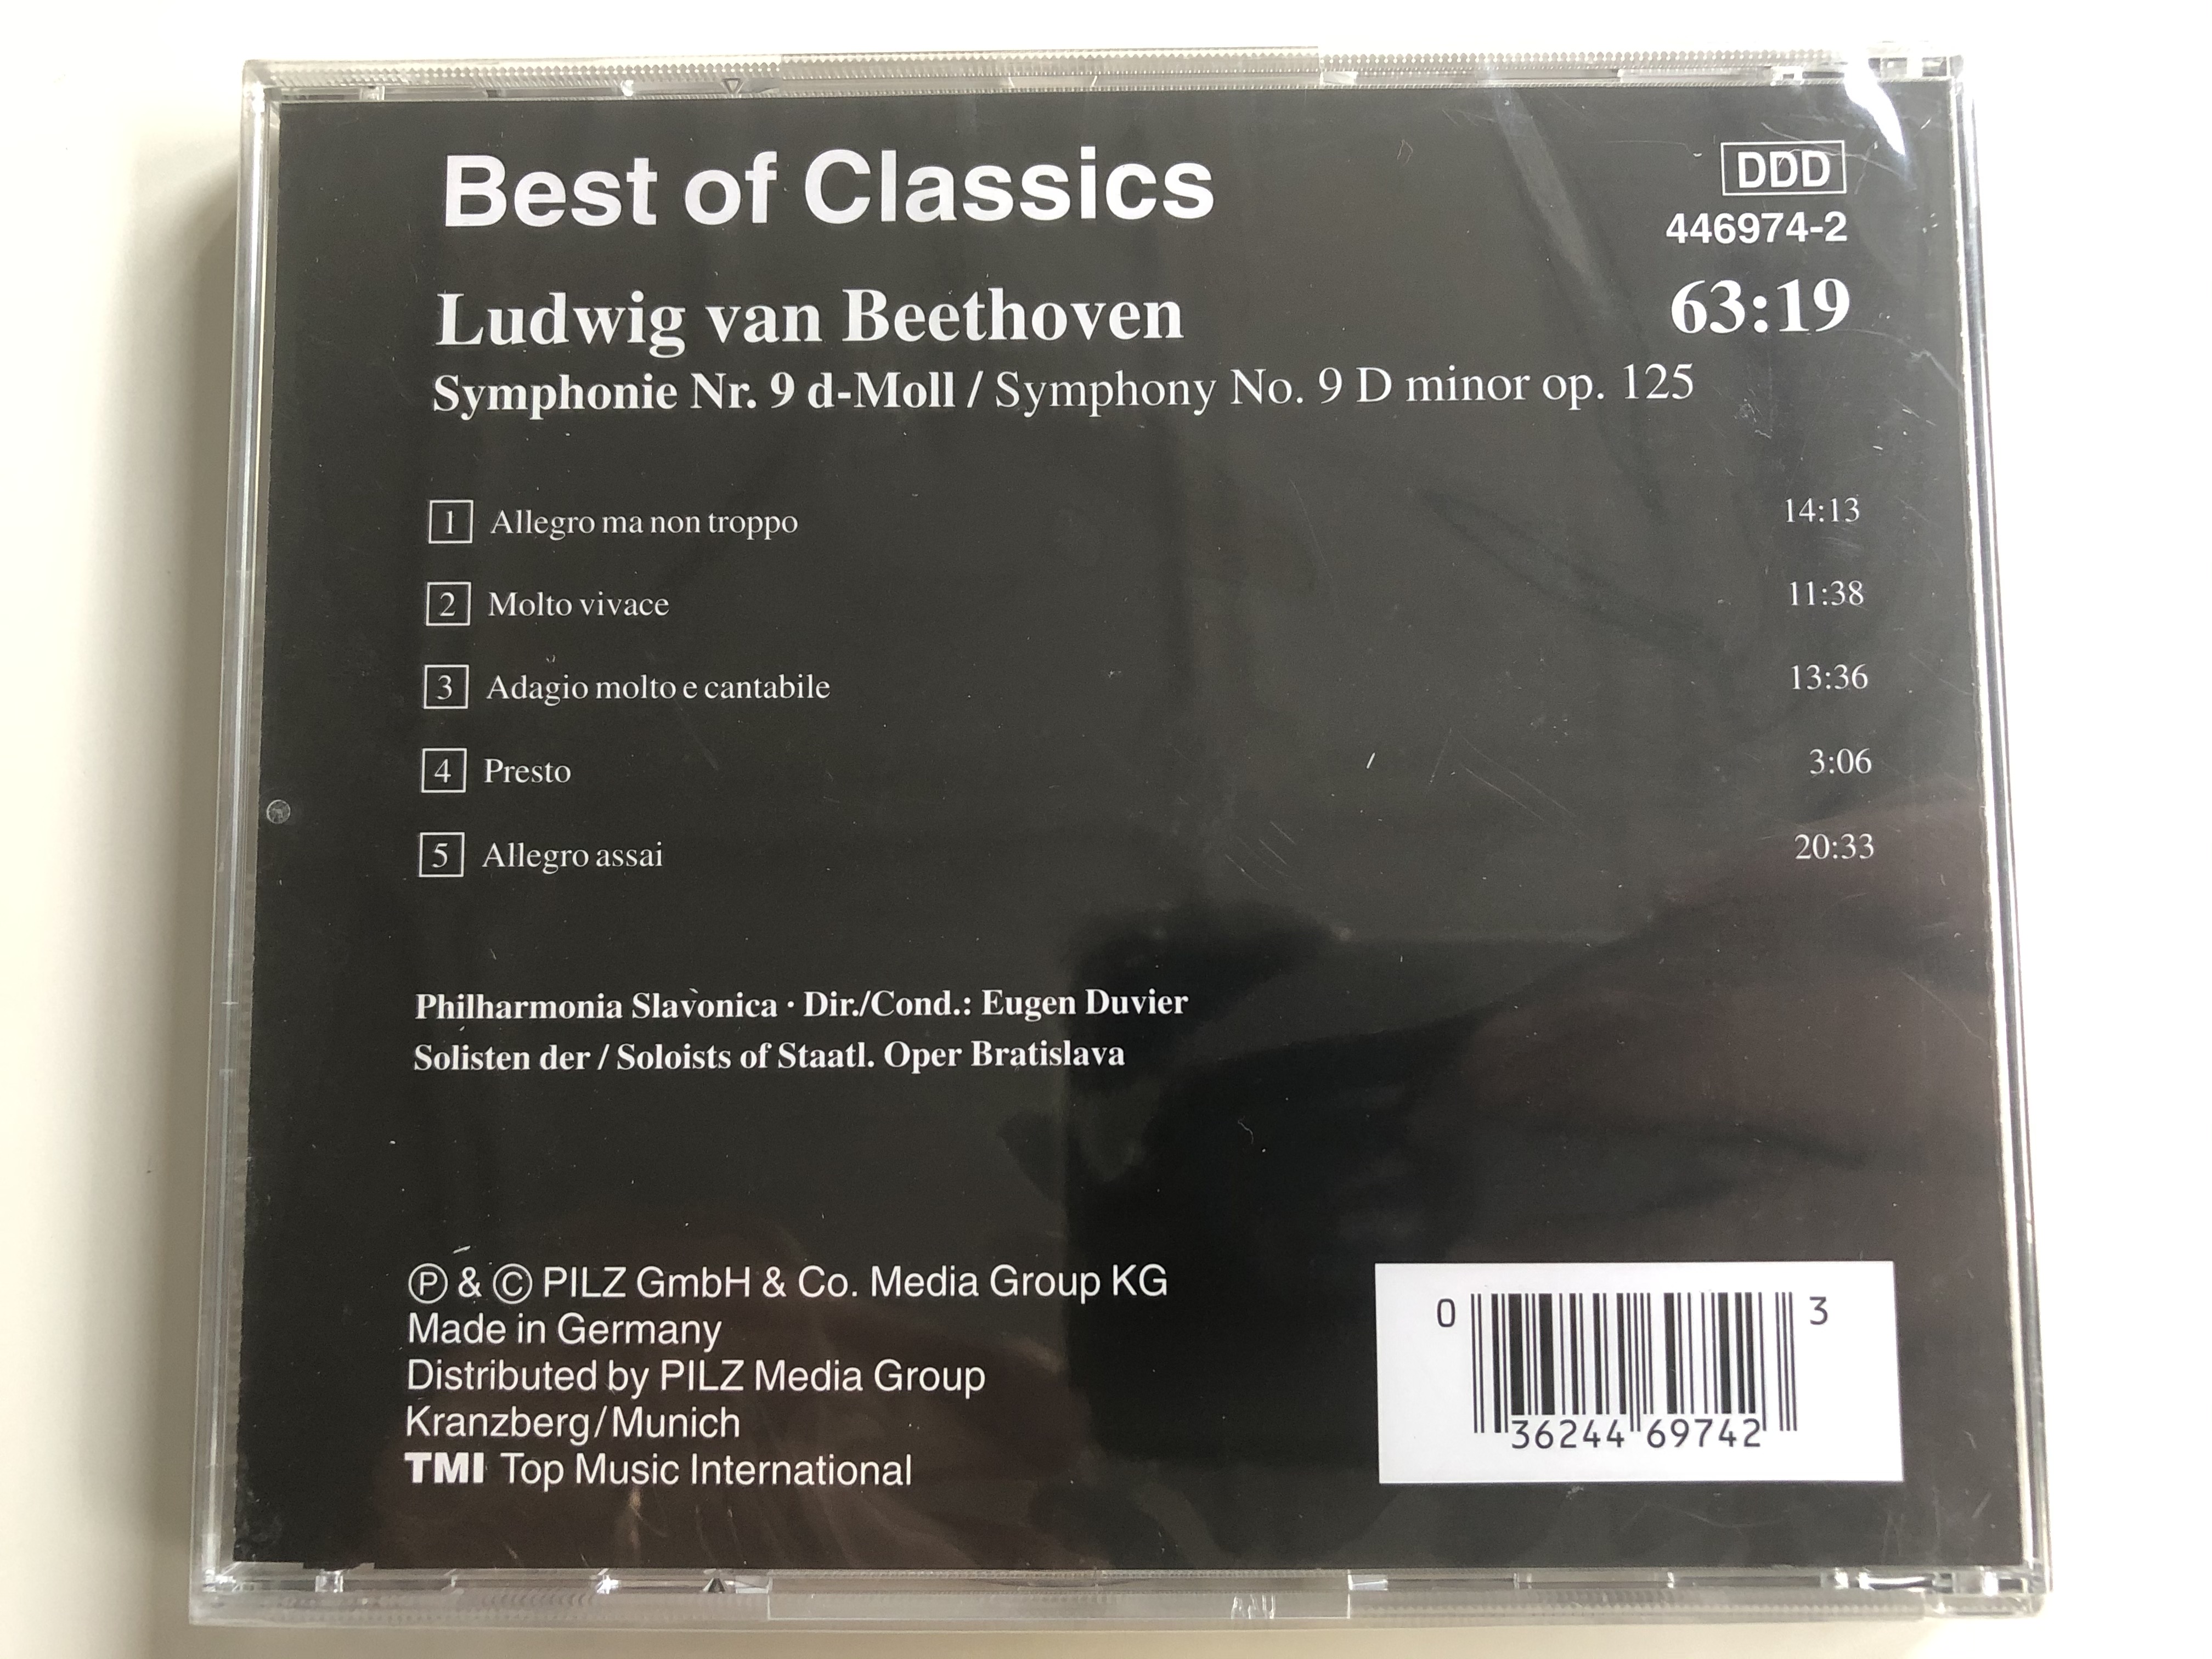 ludwig-van-beethoven-symphonie-nr.-9-best-of-classics-pilz-audio-cd-446974-2-2-.jpg